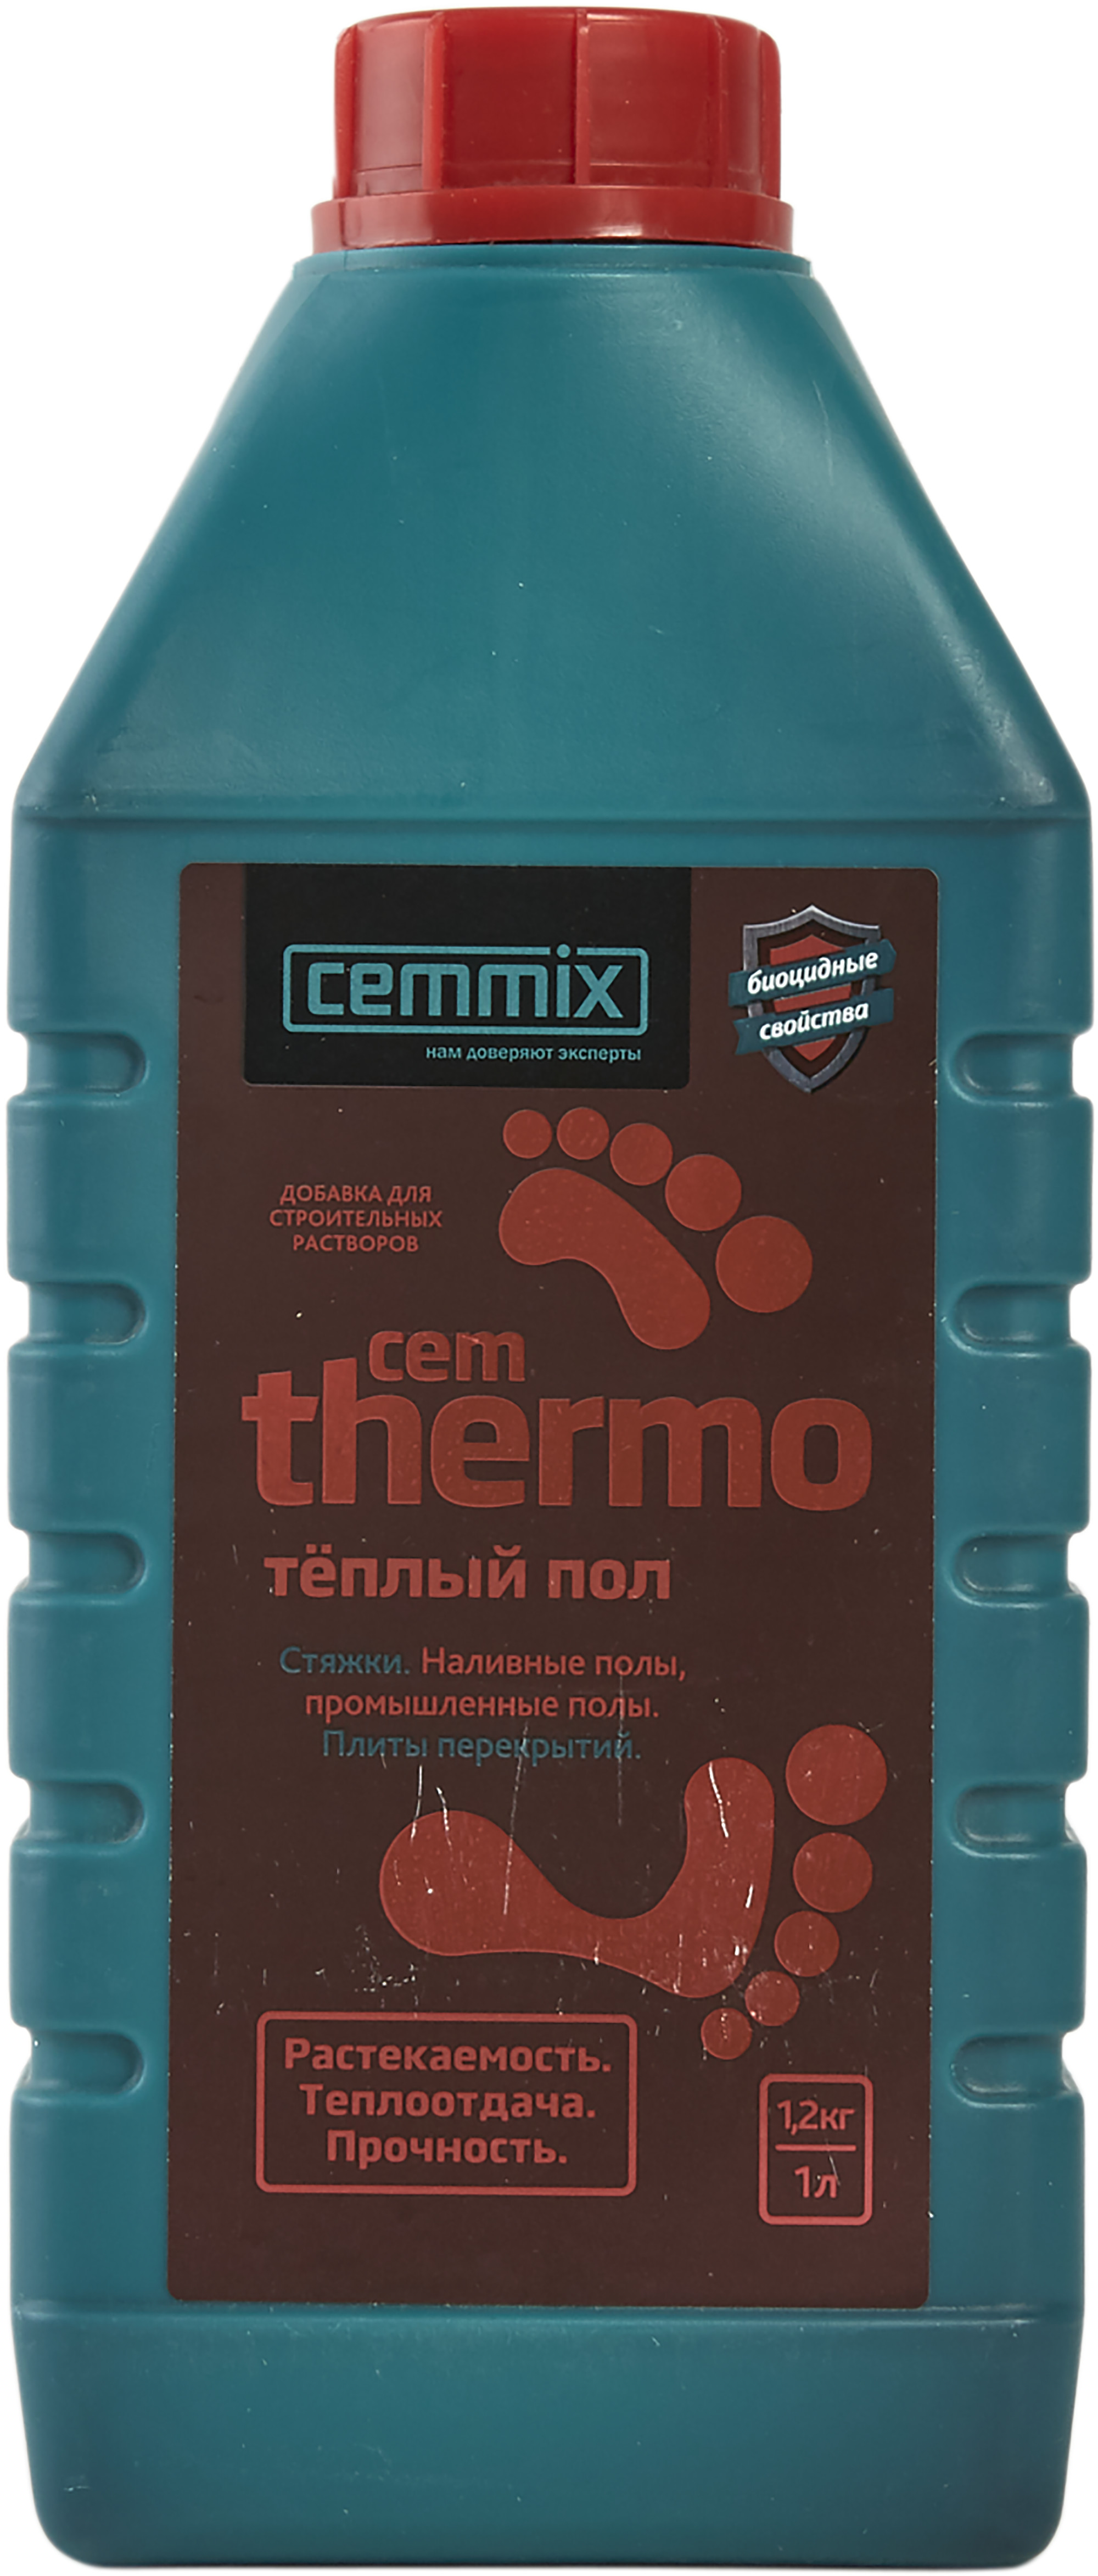 Добавки для полов. Добавка тёплый пол "CEMTHERMO" 1л. Добавка для кладки Cemmix Cemstone, 1 л. Cemmix термо. Добавка в бетон для теплого пола.